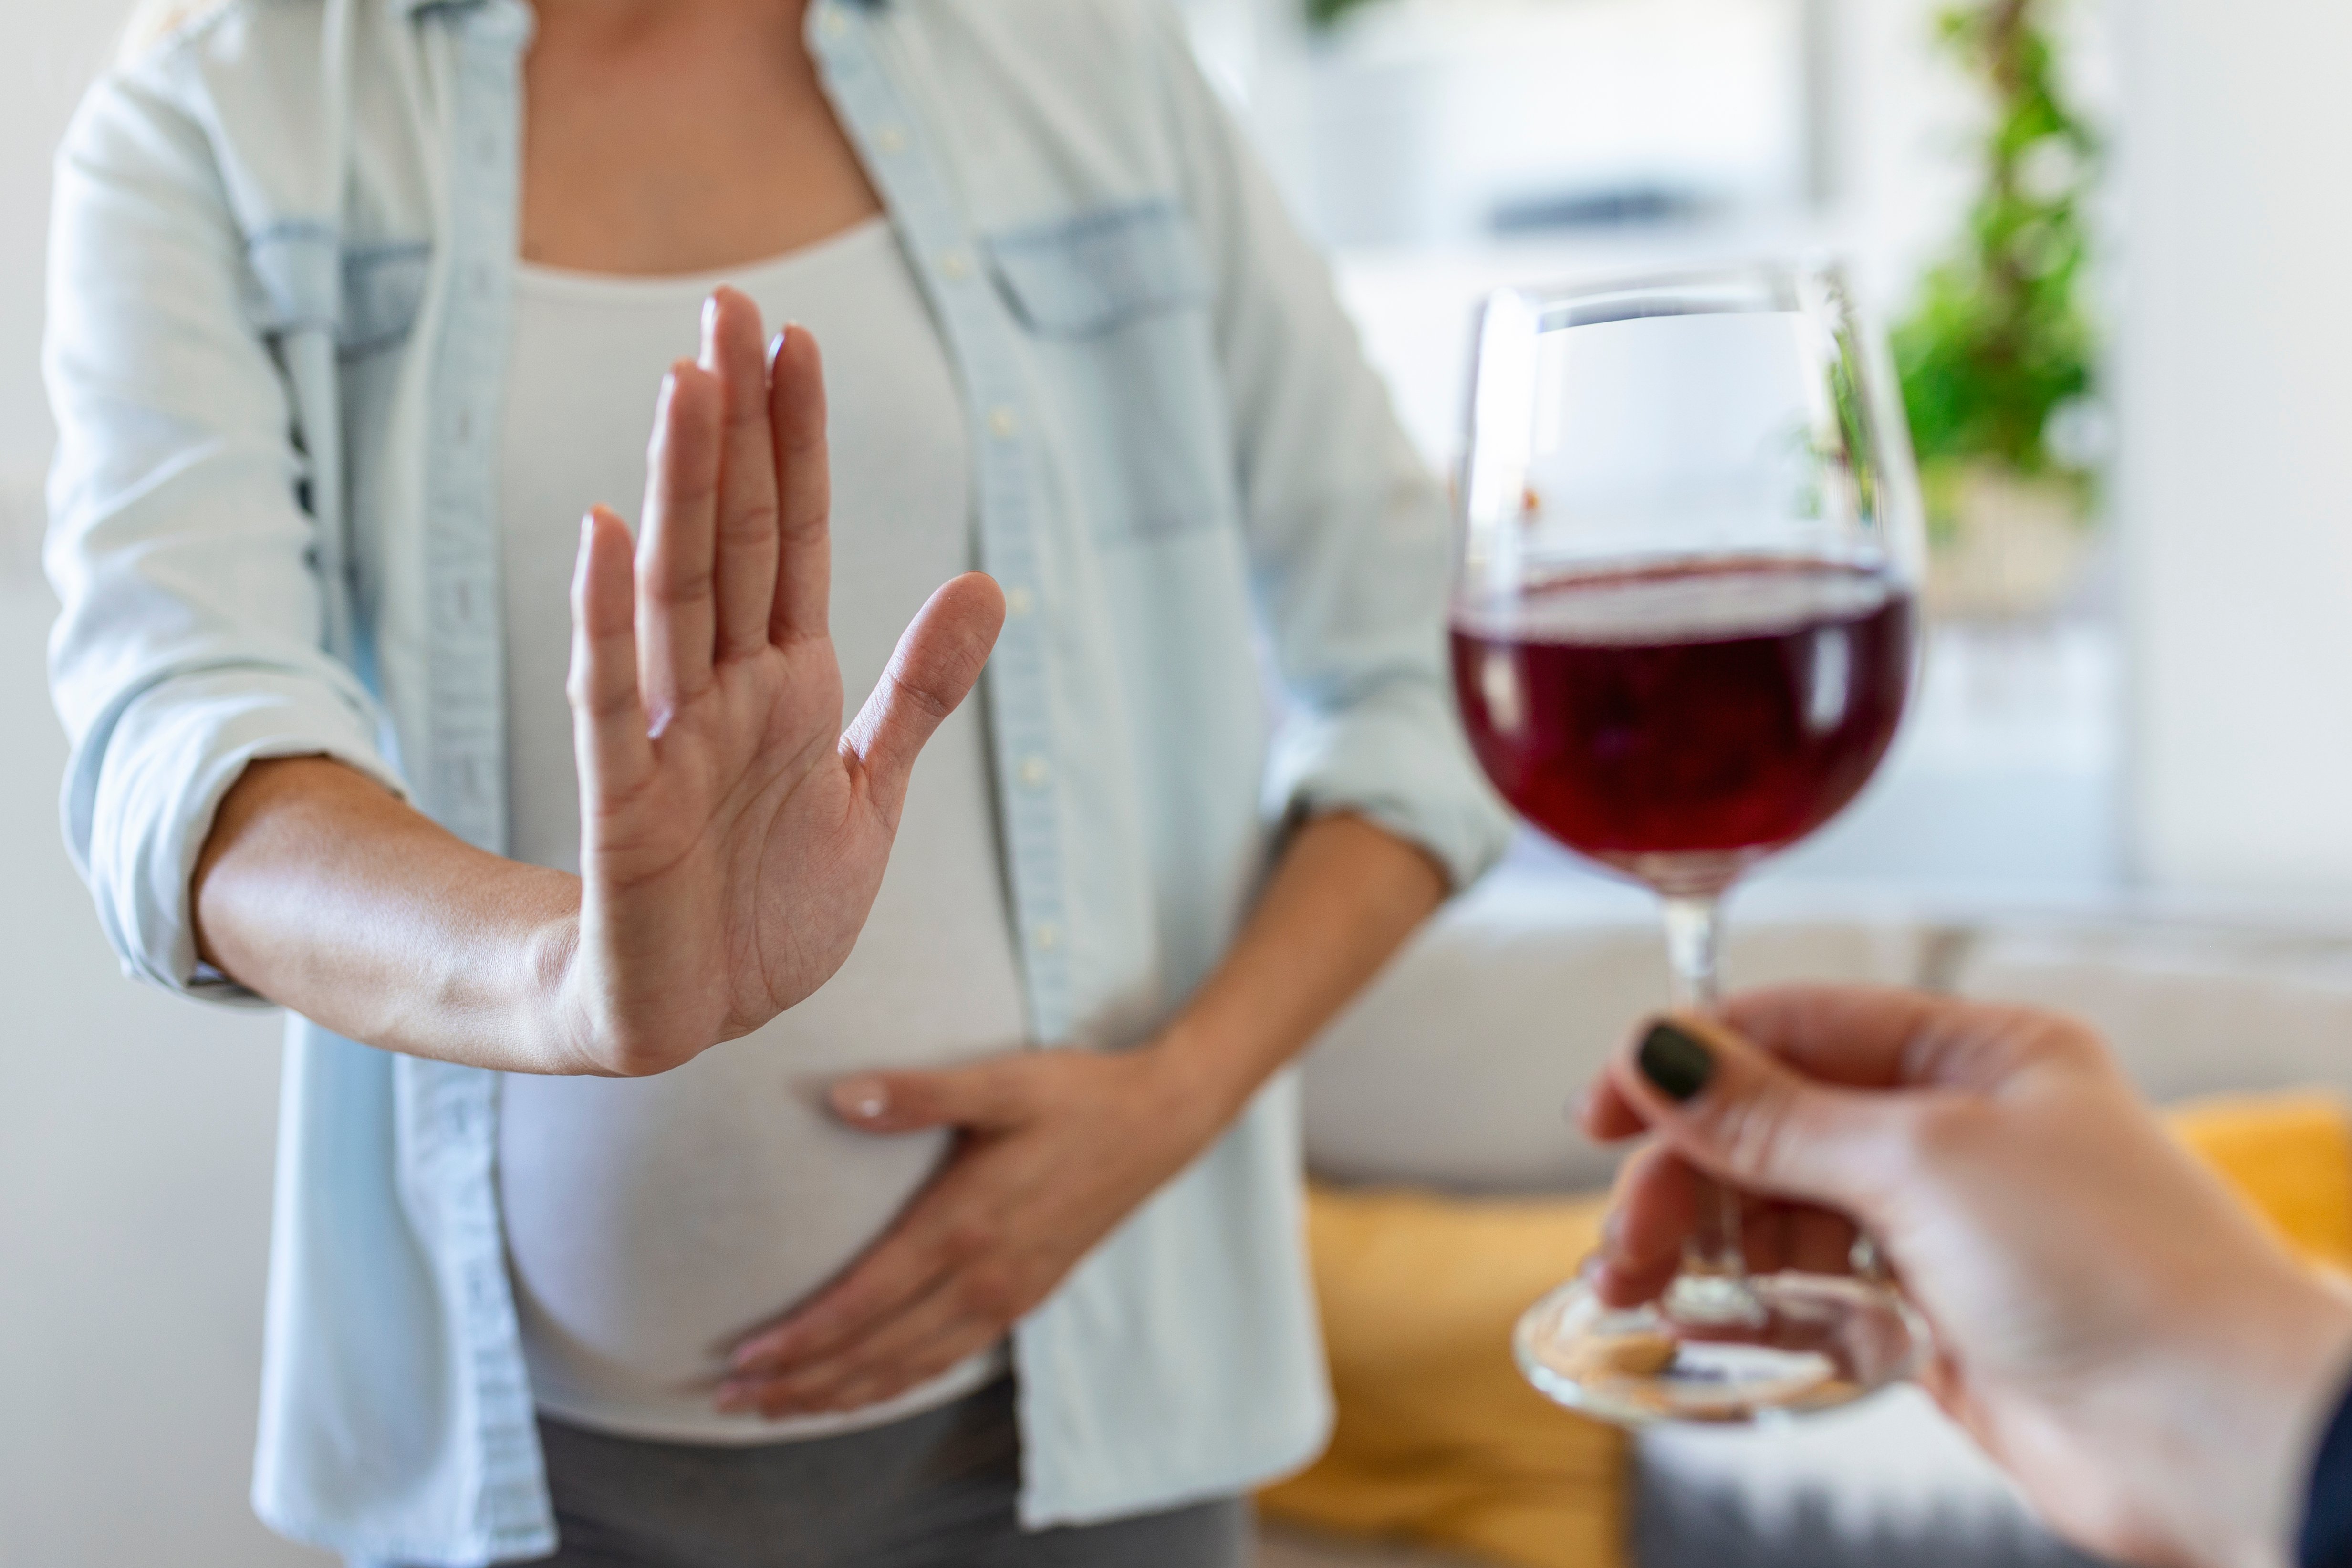 Femme enceinte refusant un verre d'alcool, syndrome d'alcoolisation fœtale